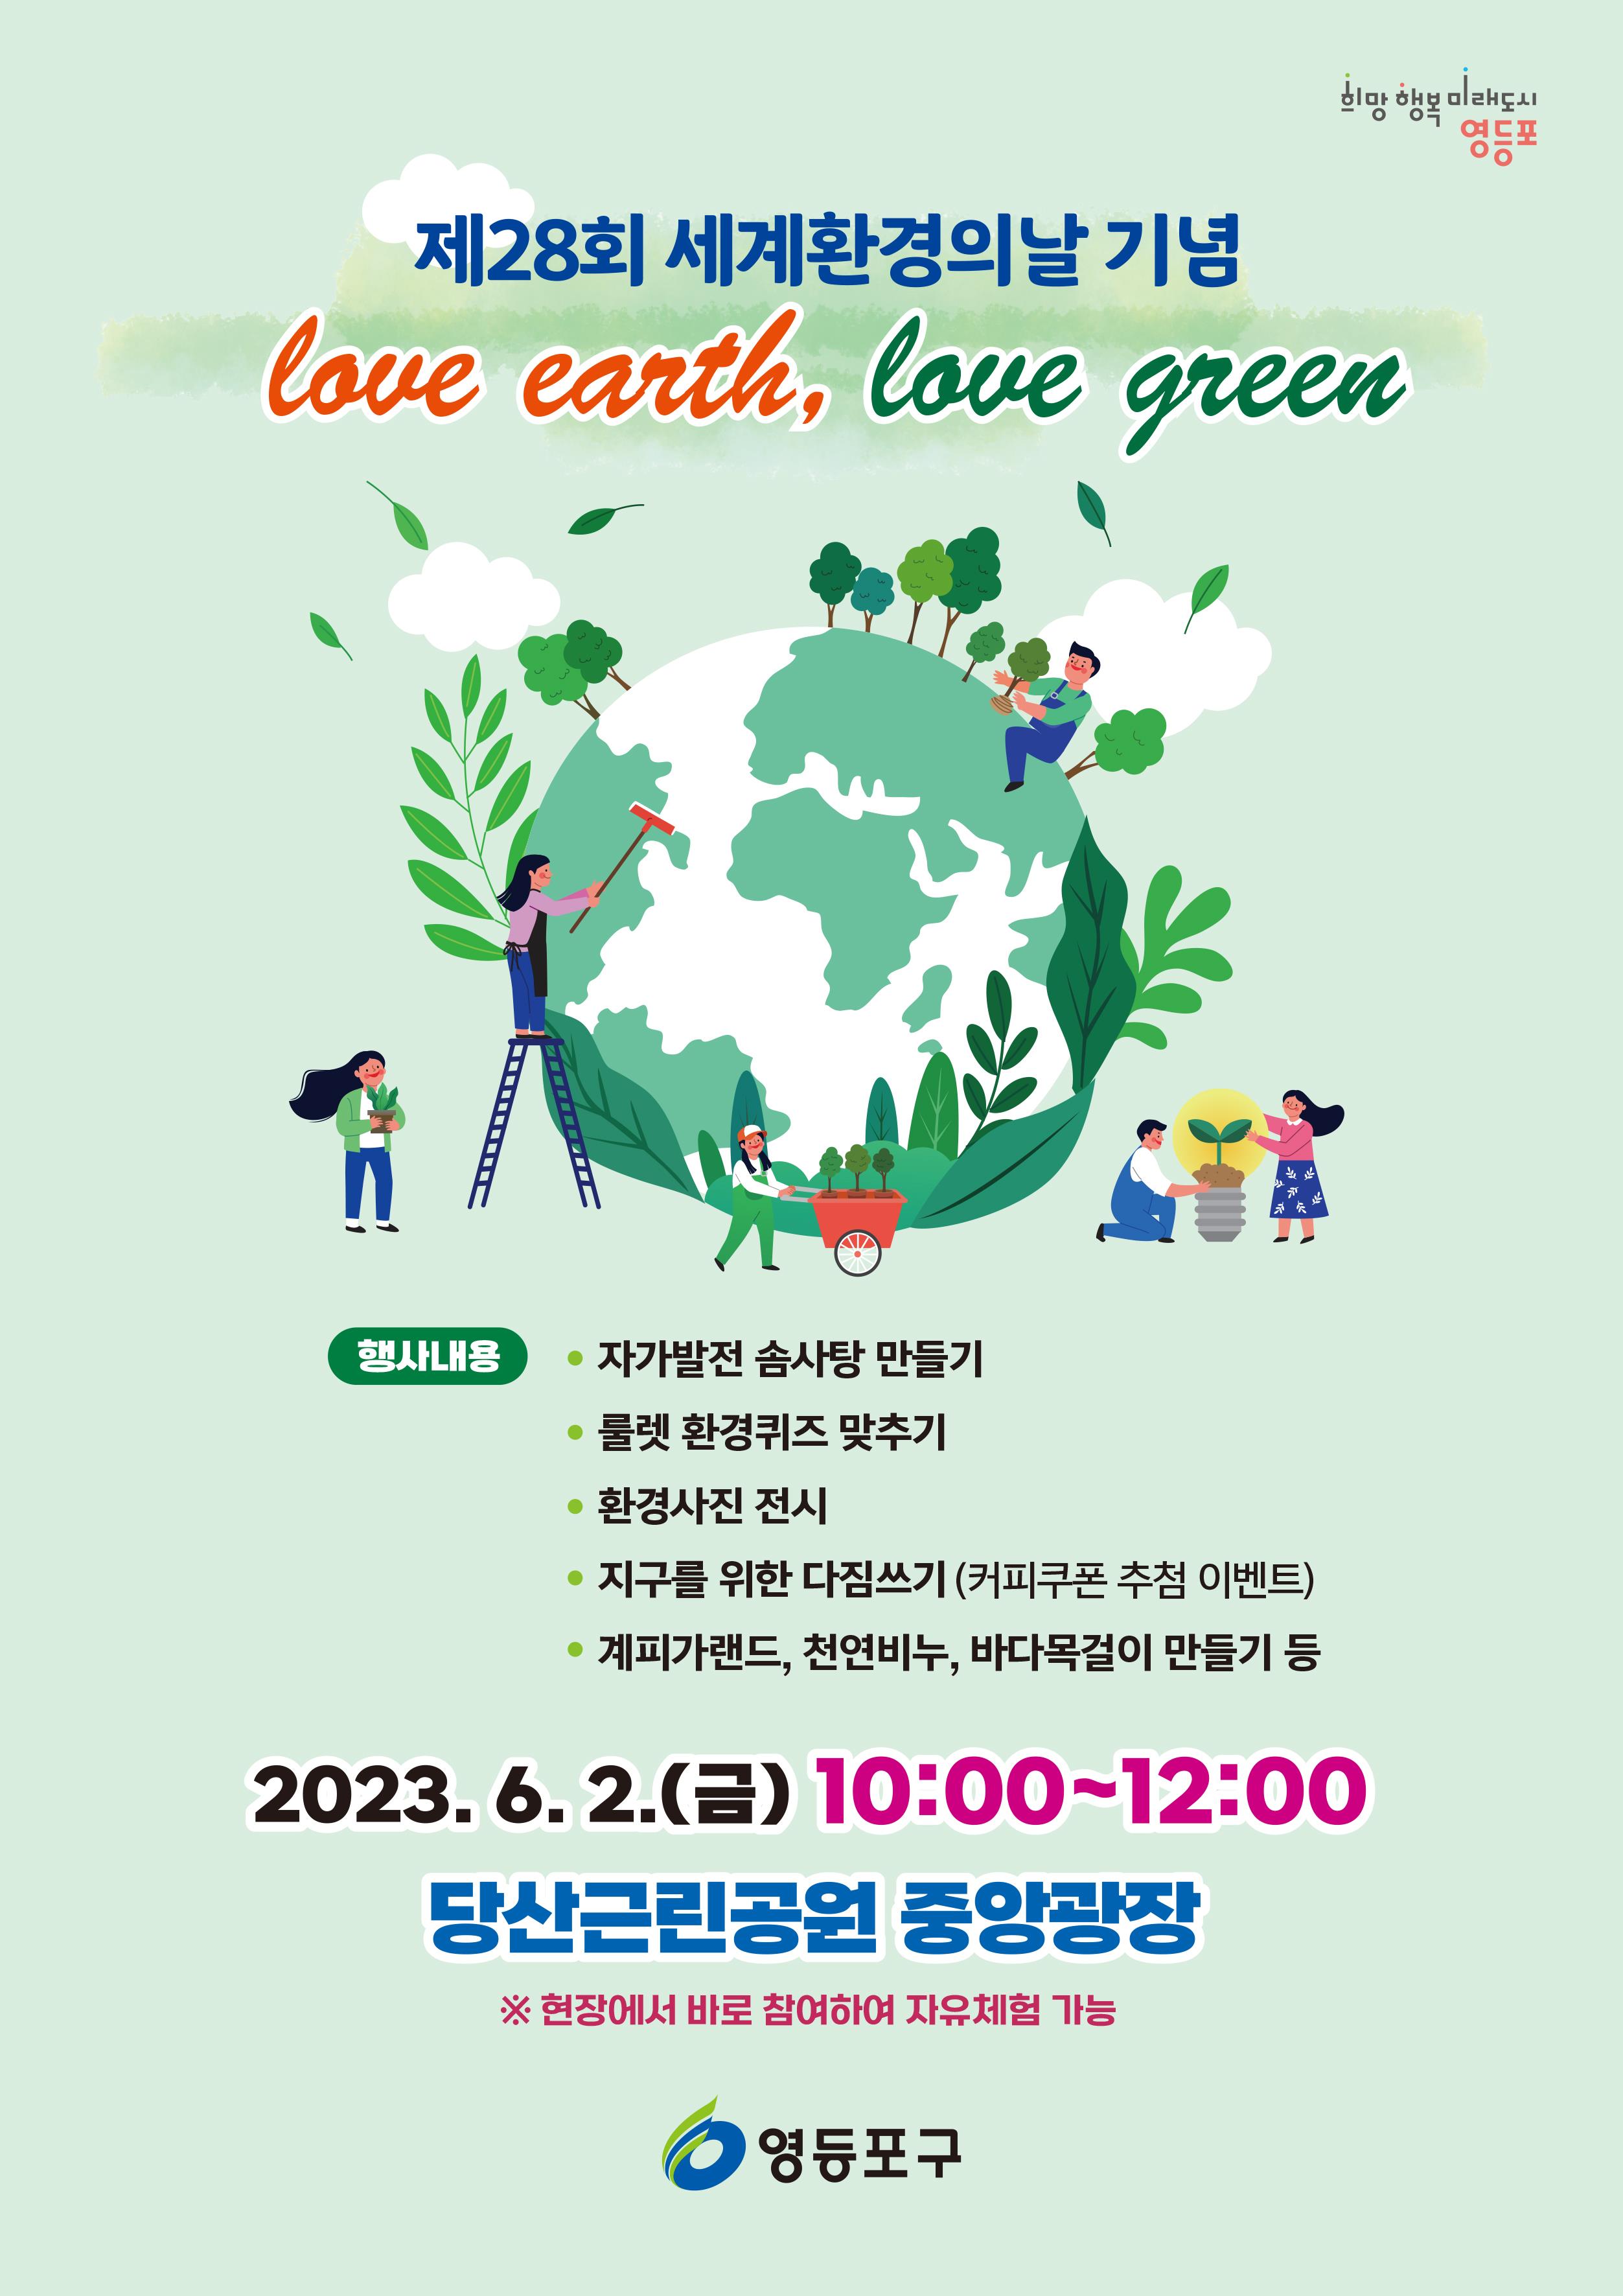 영등포구 2023 세계환경의날 기념 행사 포스터. 영등포구 제공